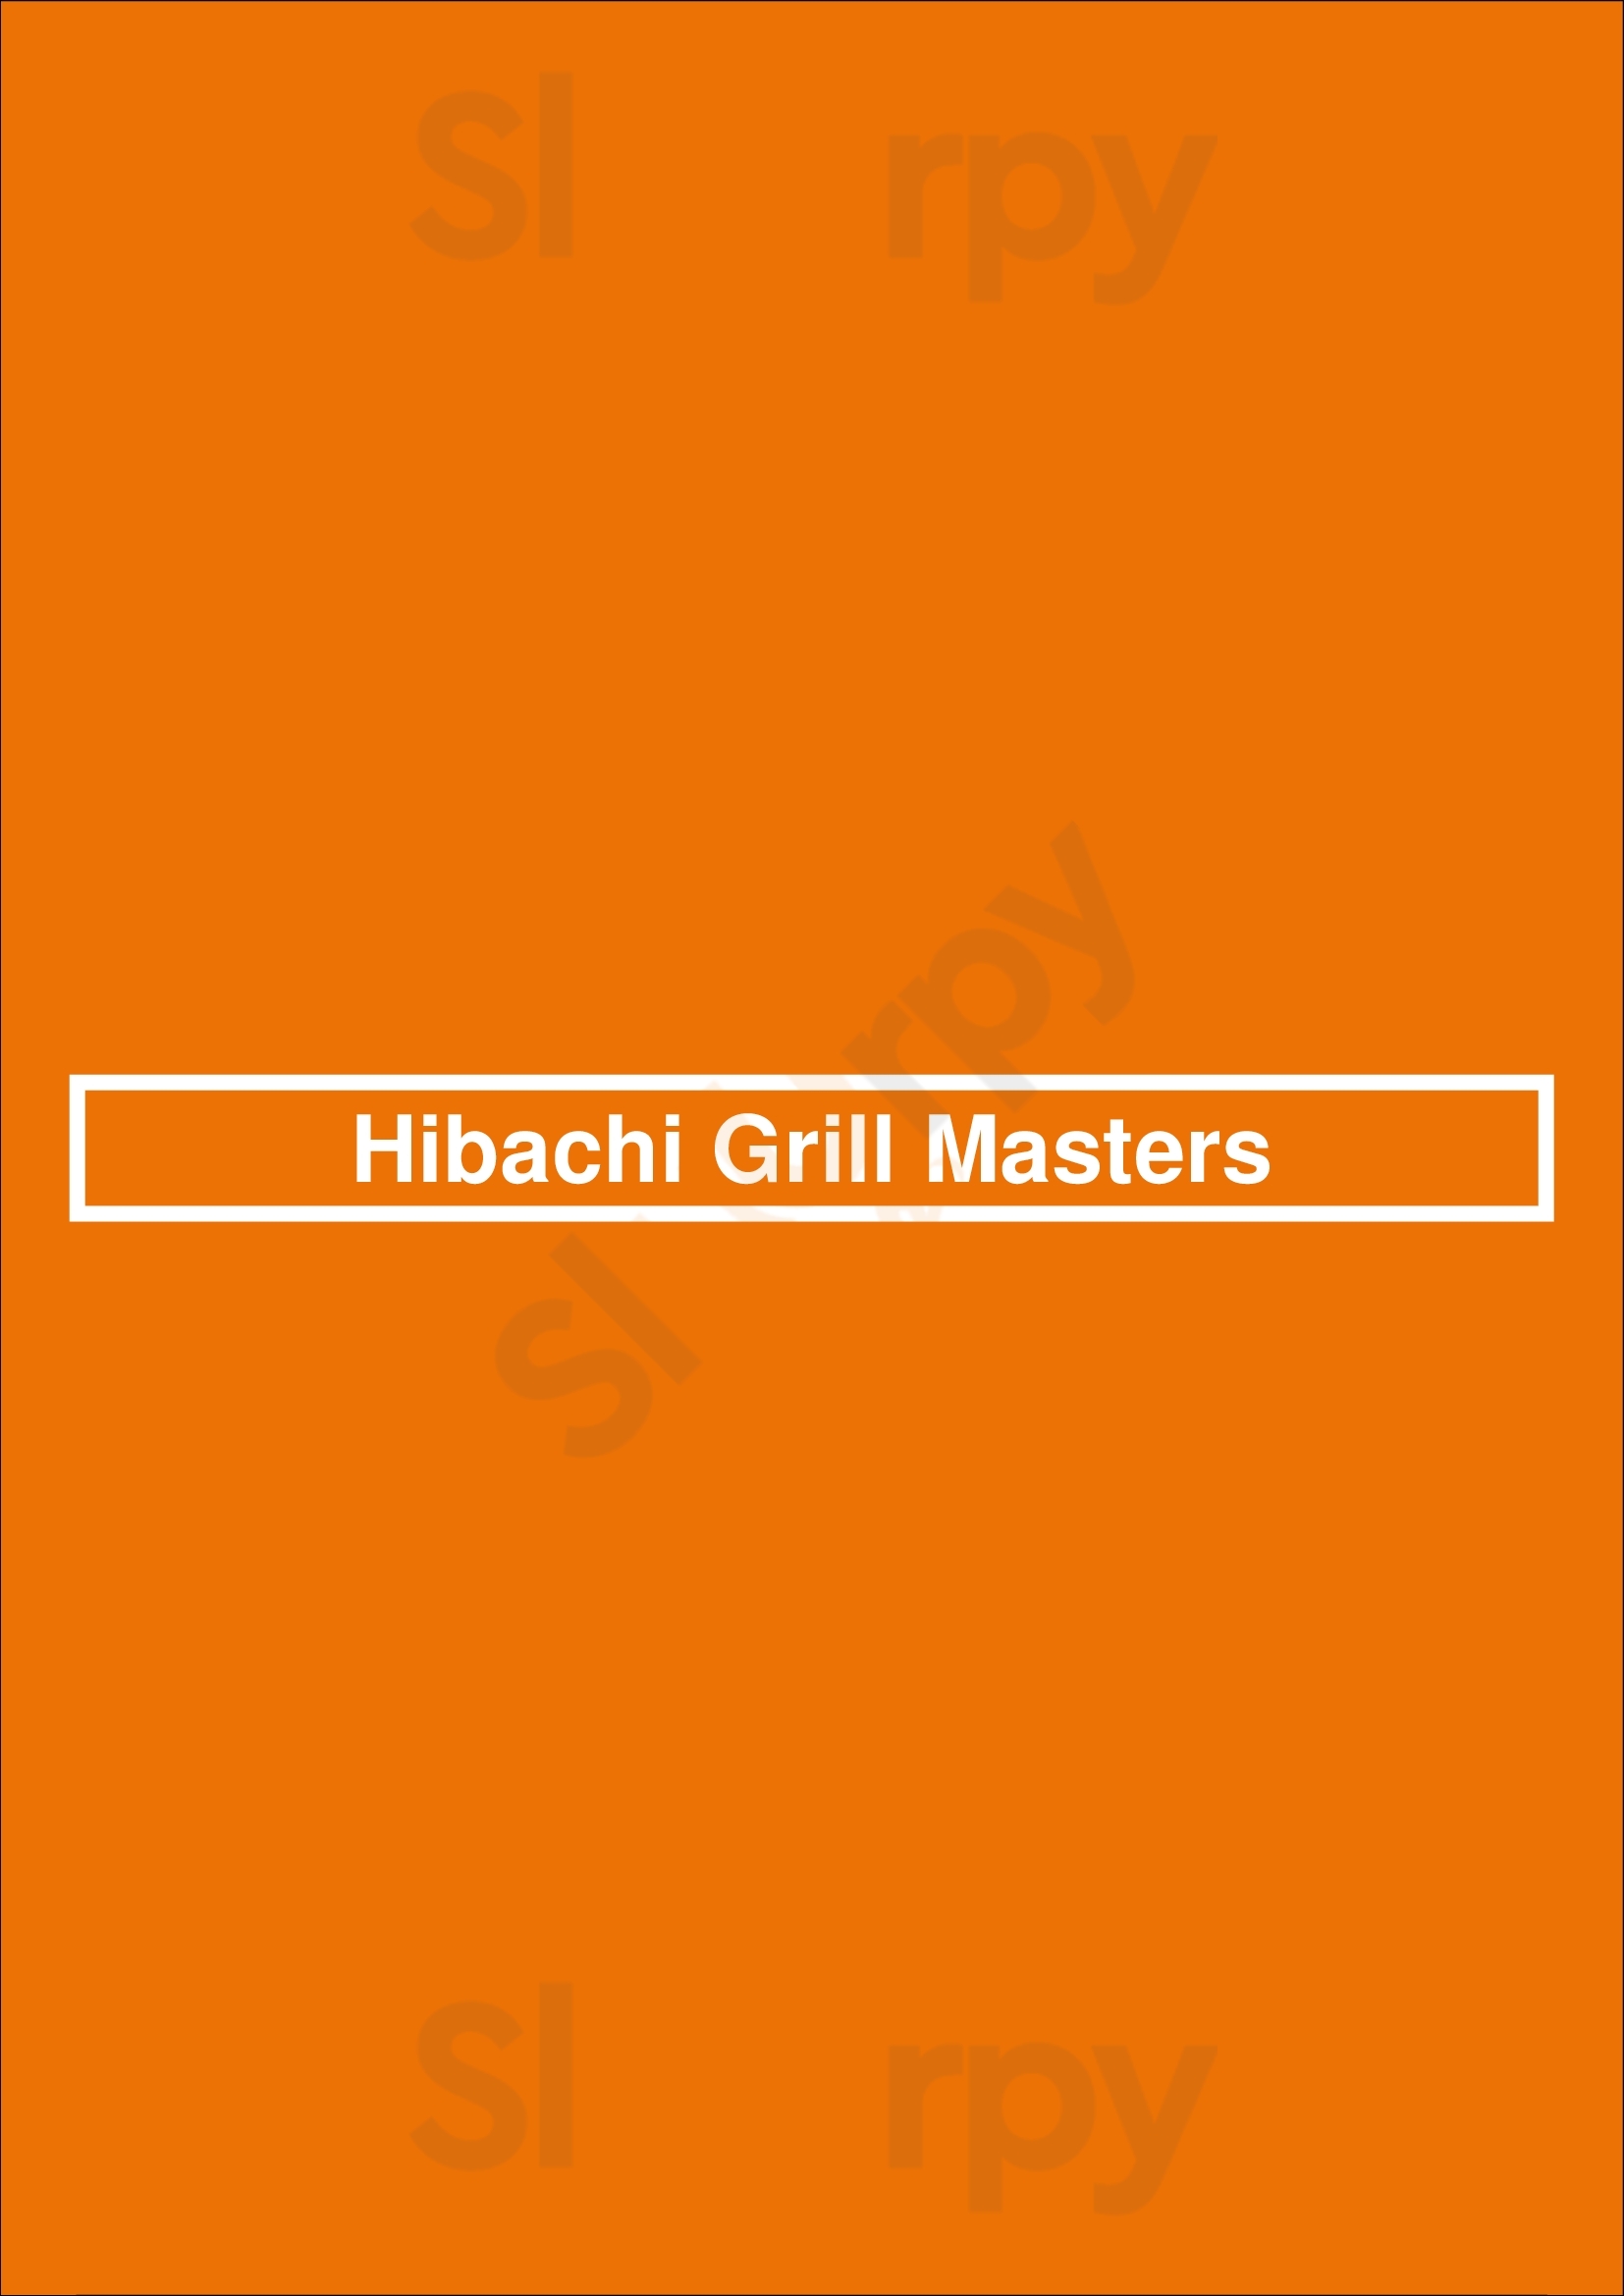 Hibachi Grill Masters Miami Menu - 1